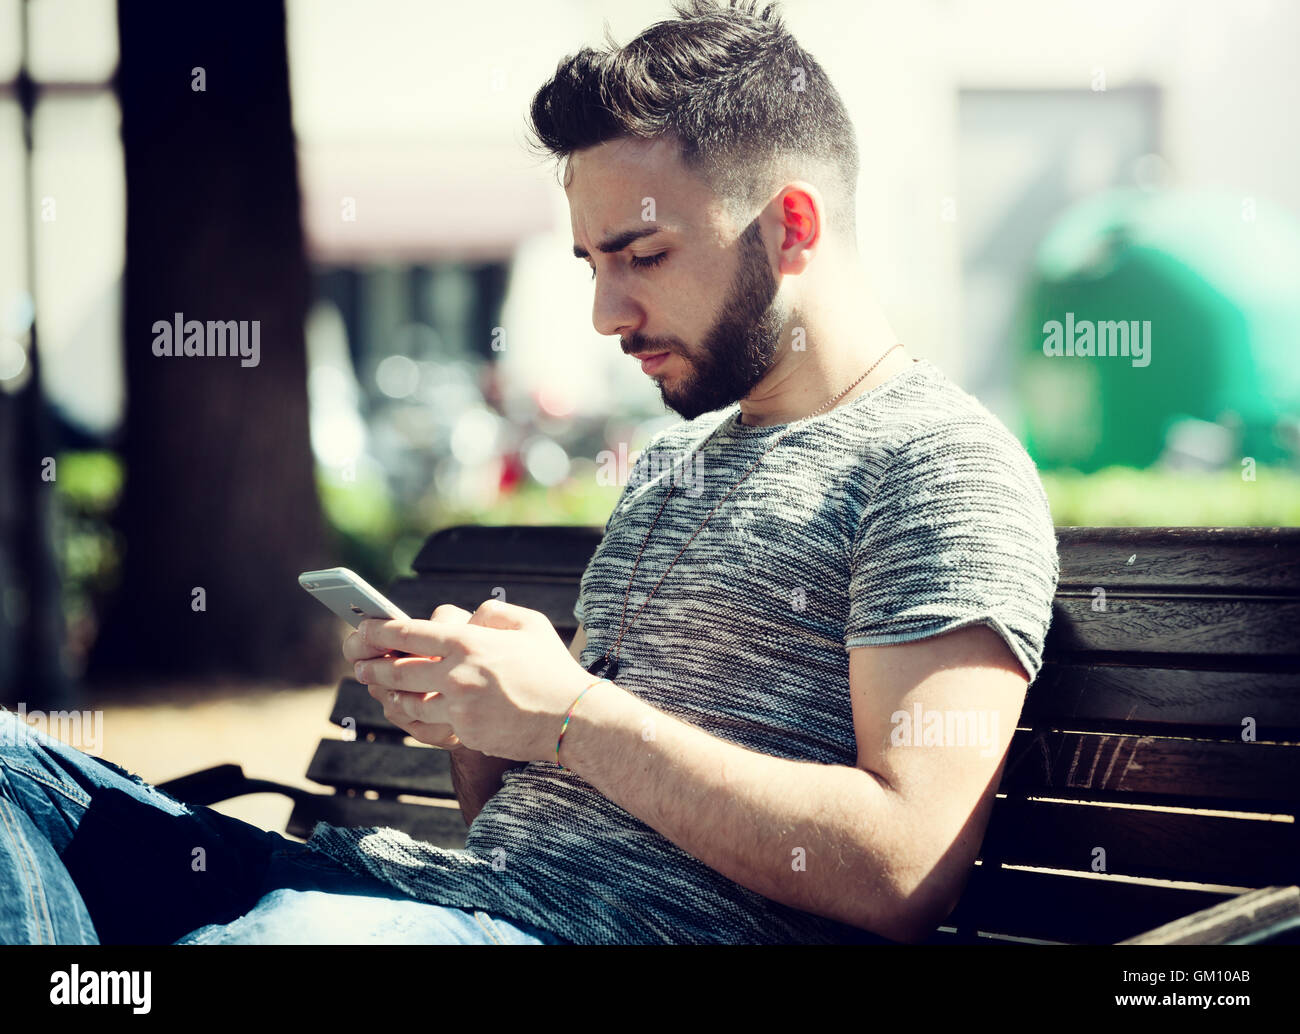 Junger Mann im Park mit Smartphone an einem sonnigen Tag. Stockfoto